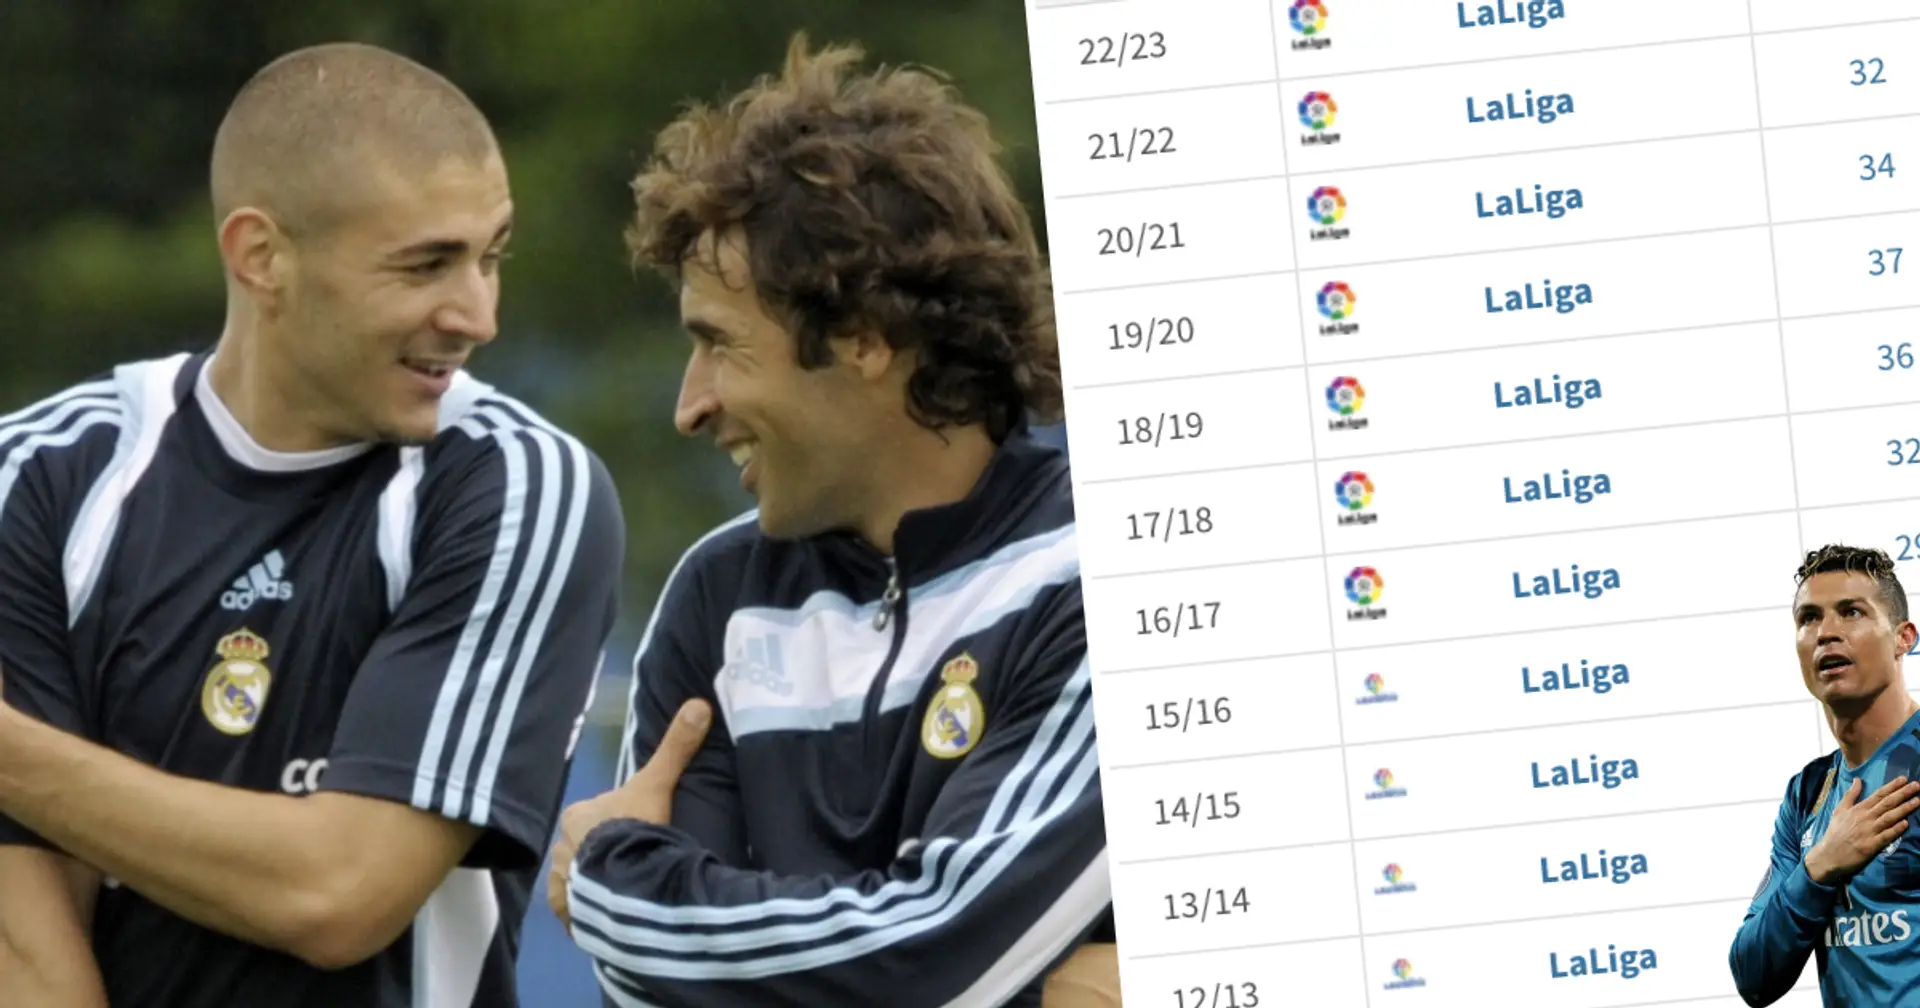 Benzema überholt Raul und wird der zweitbeste Torschütze von Real Madrid in La Liga